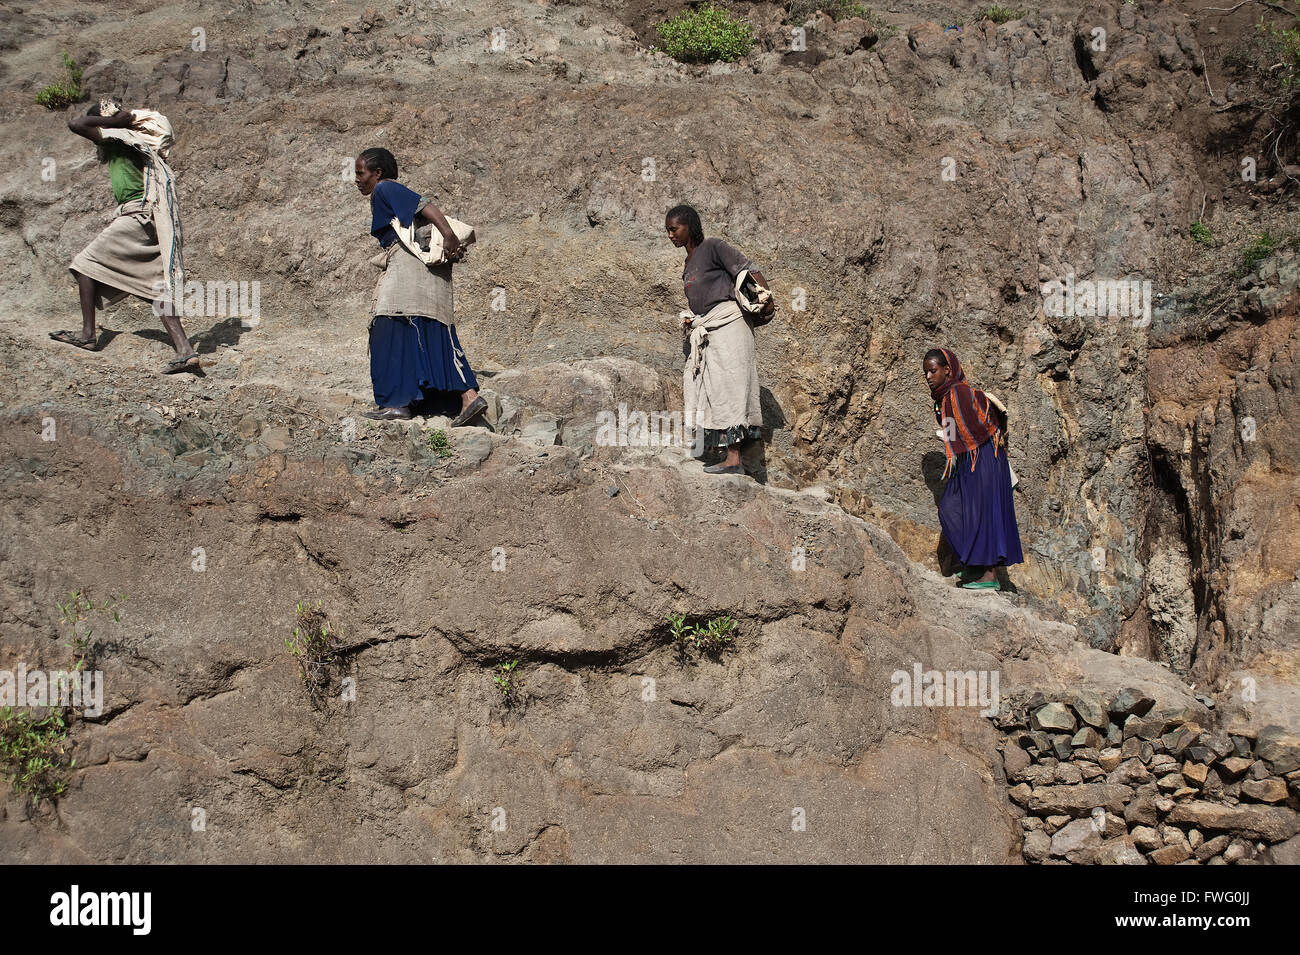 Las obras de riego : trabajadores están llevando piedras para construir un canal de irrigación (Etiopía) Foto de stock